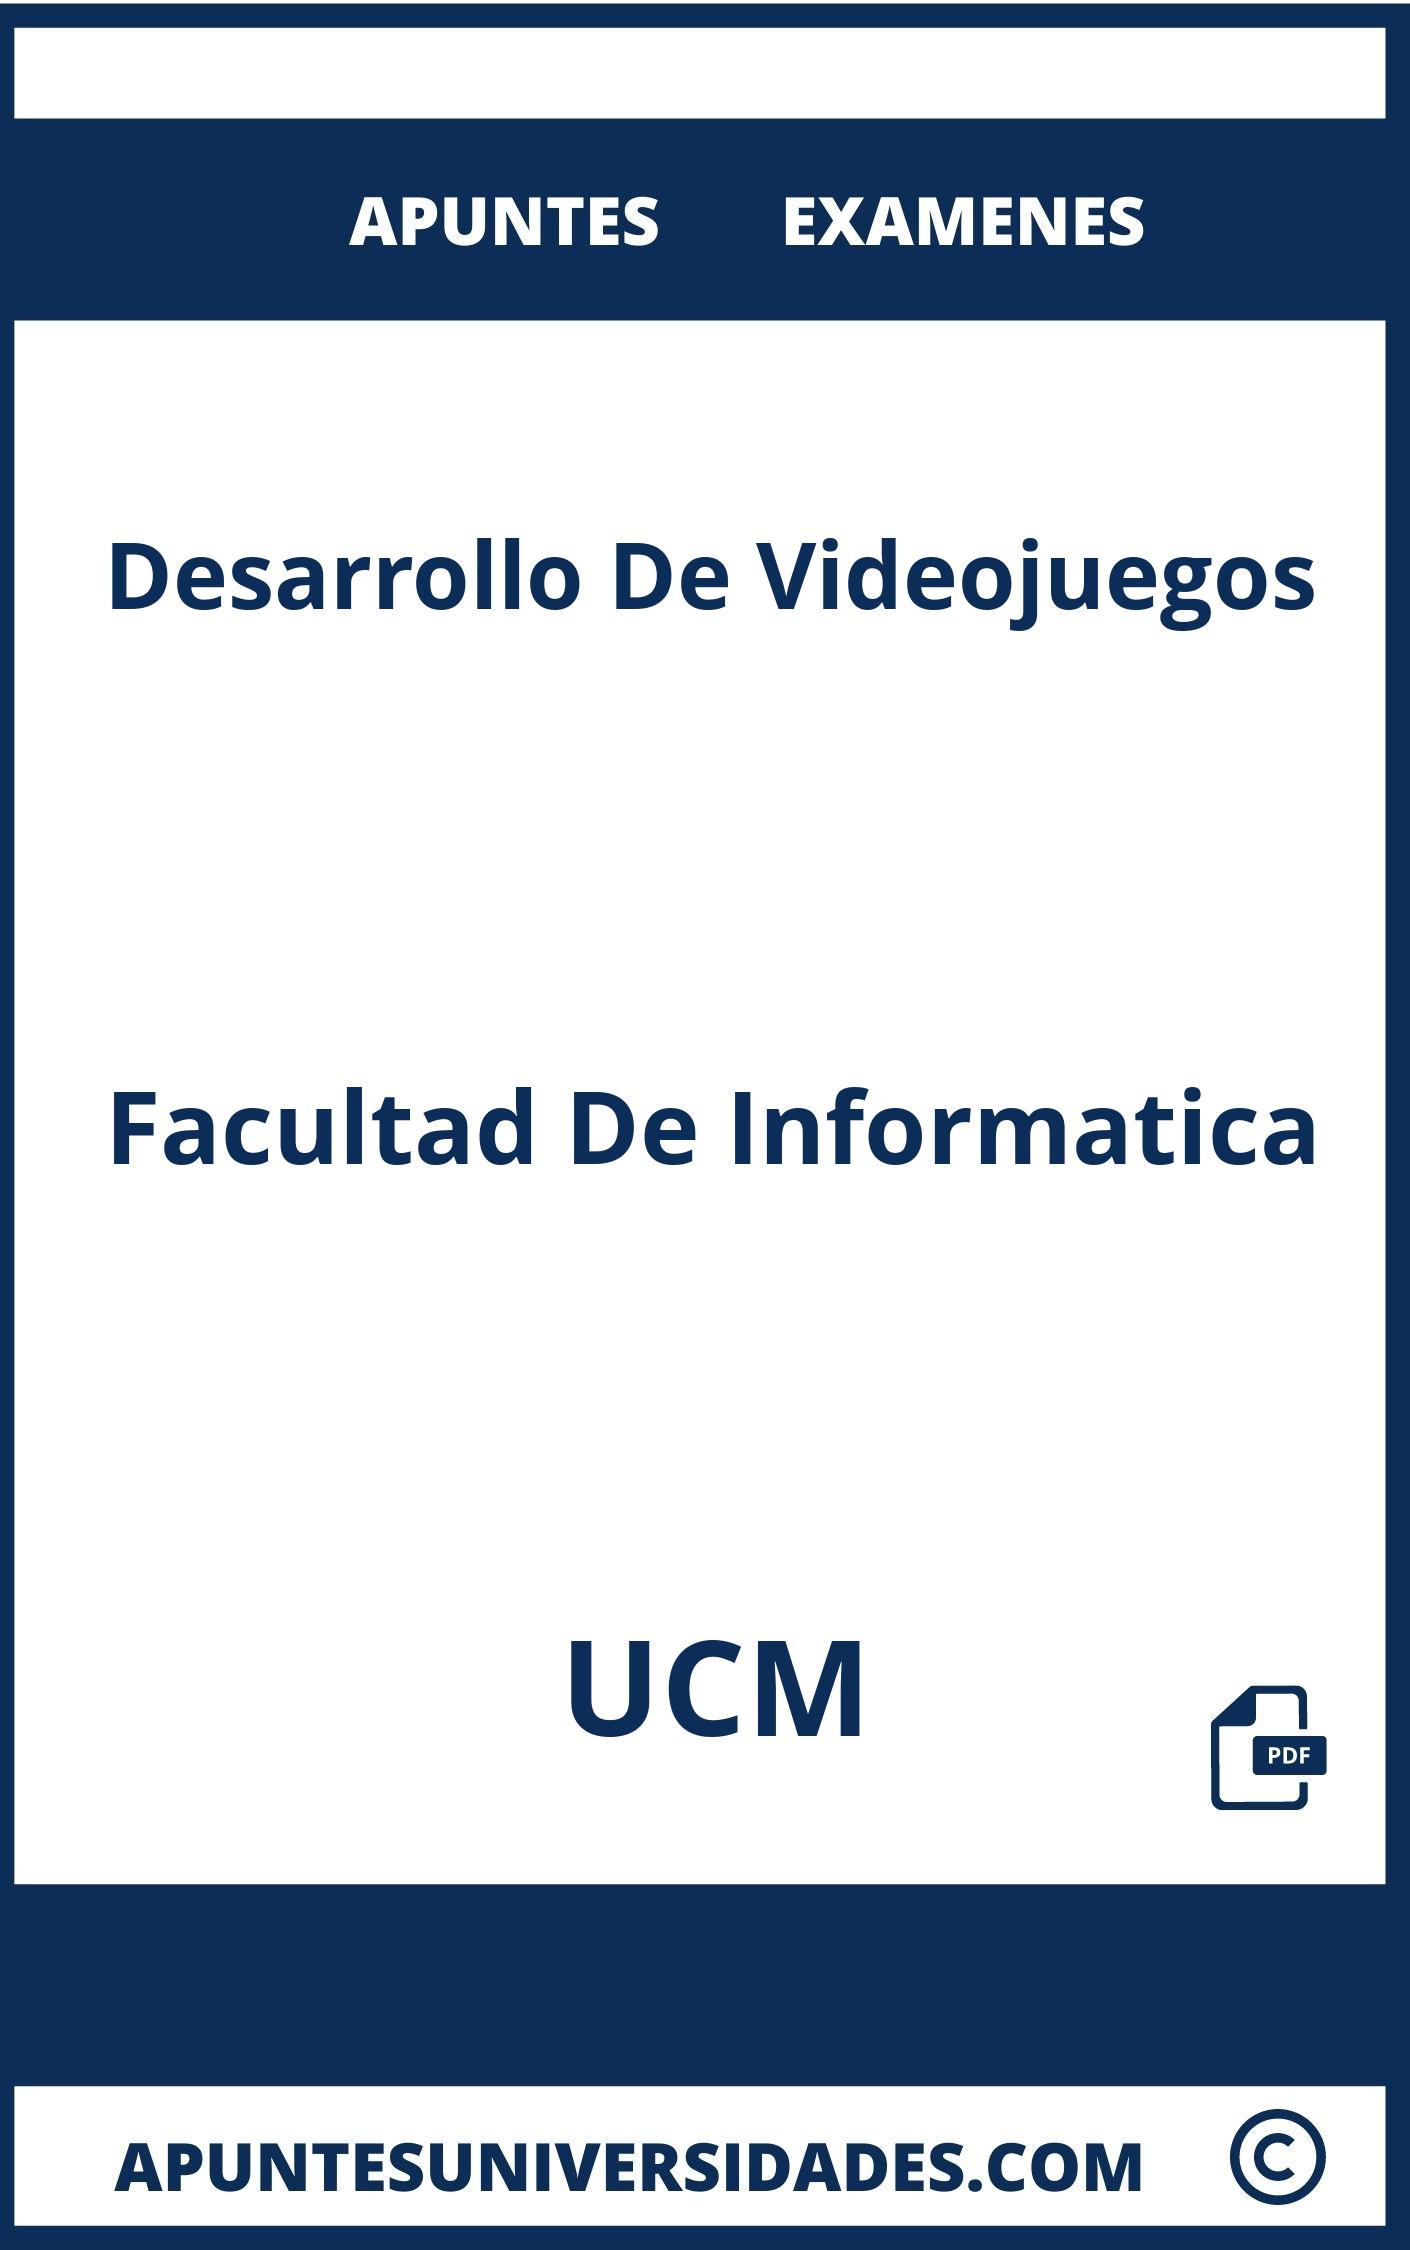 Apuntes y Examenes Desarrollo De Videojuegos UCM